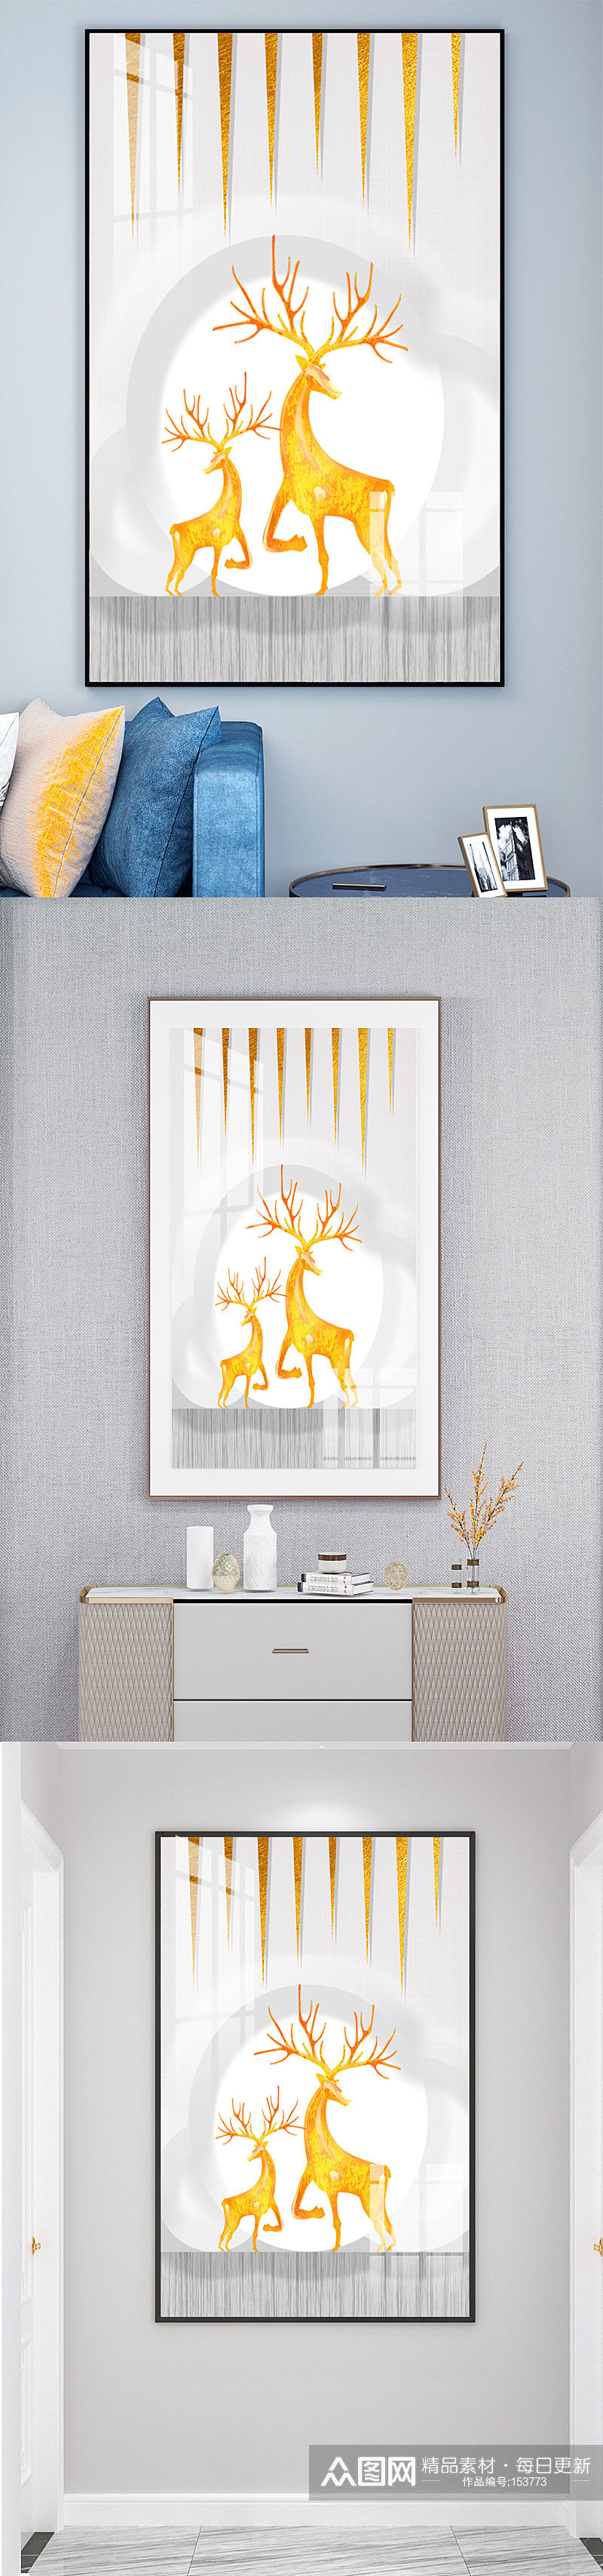 手绘北欧金色麋鹿装饰画素材